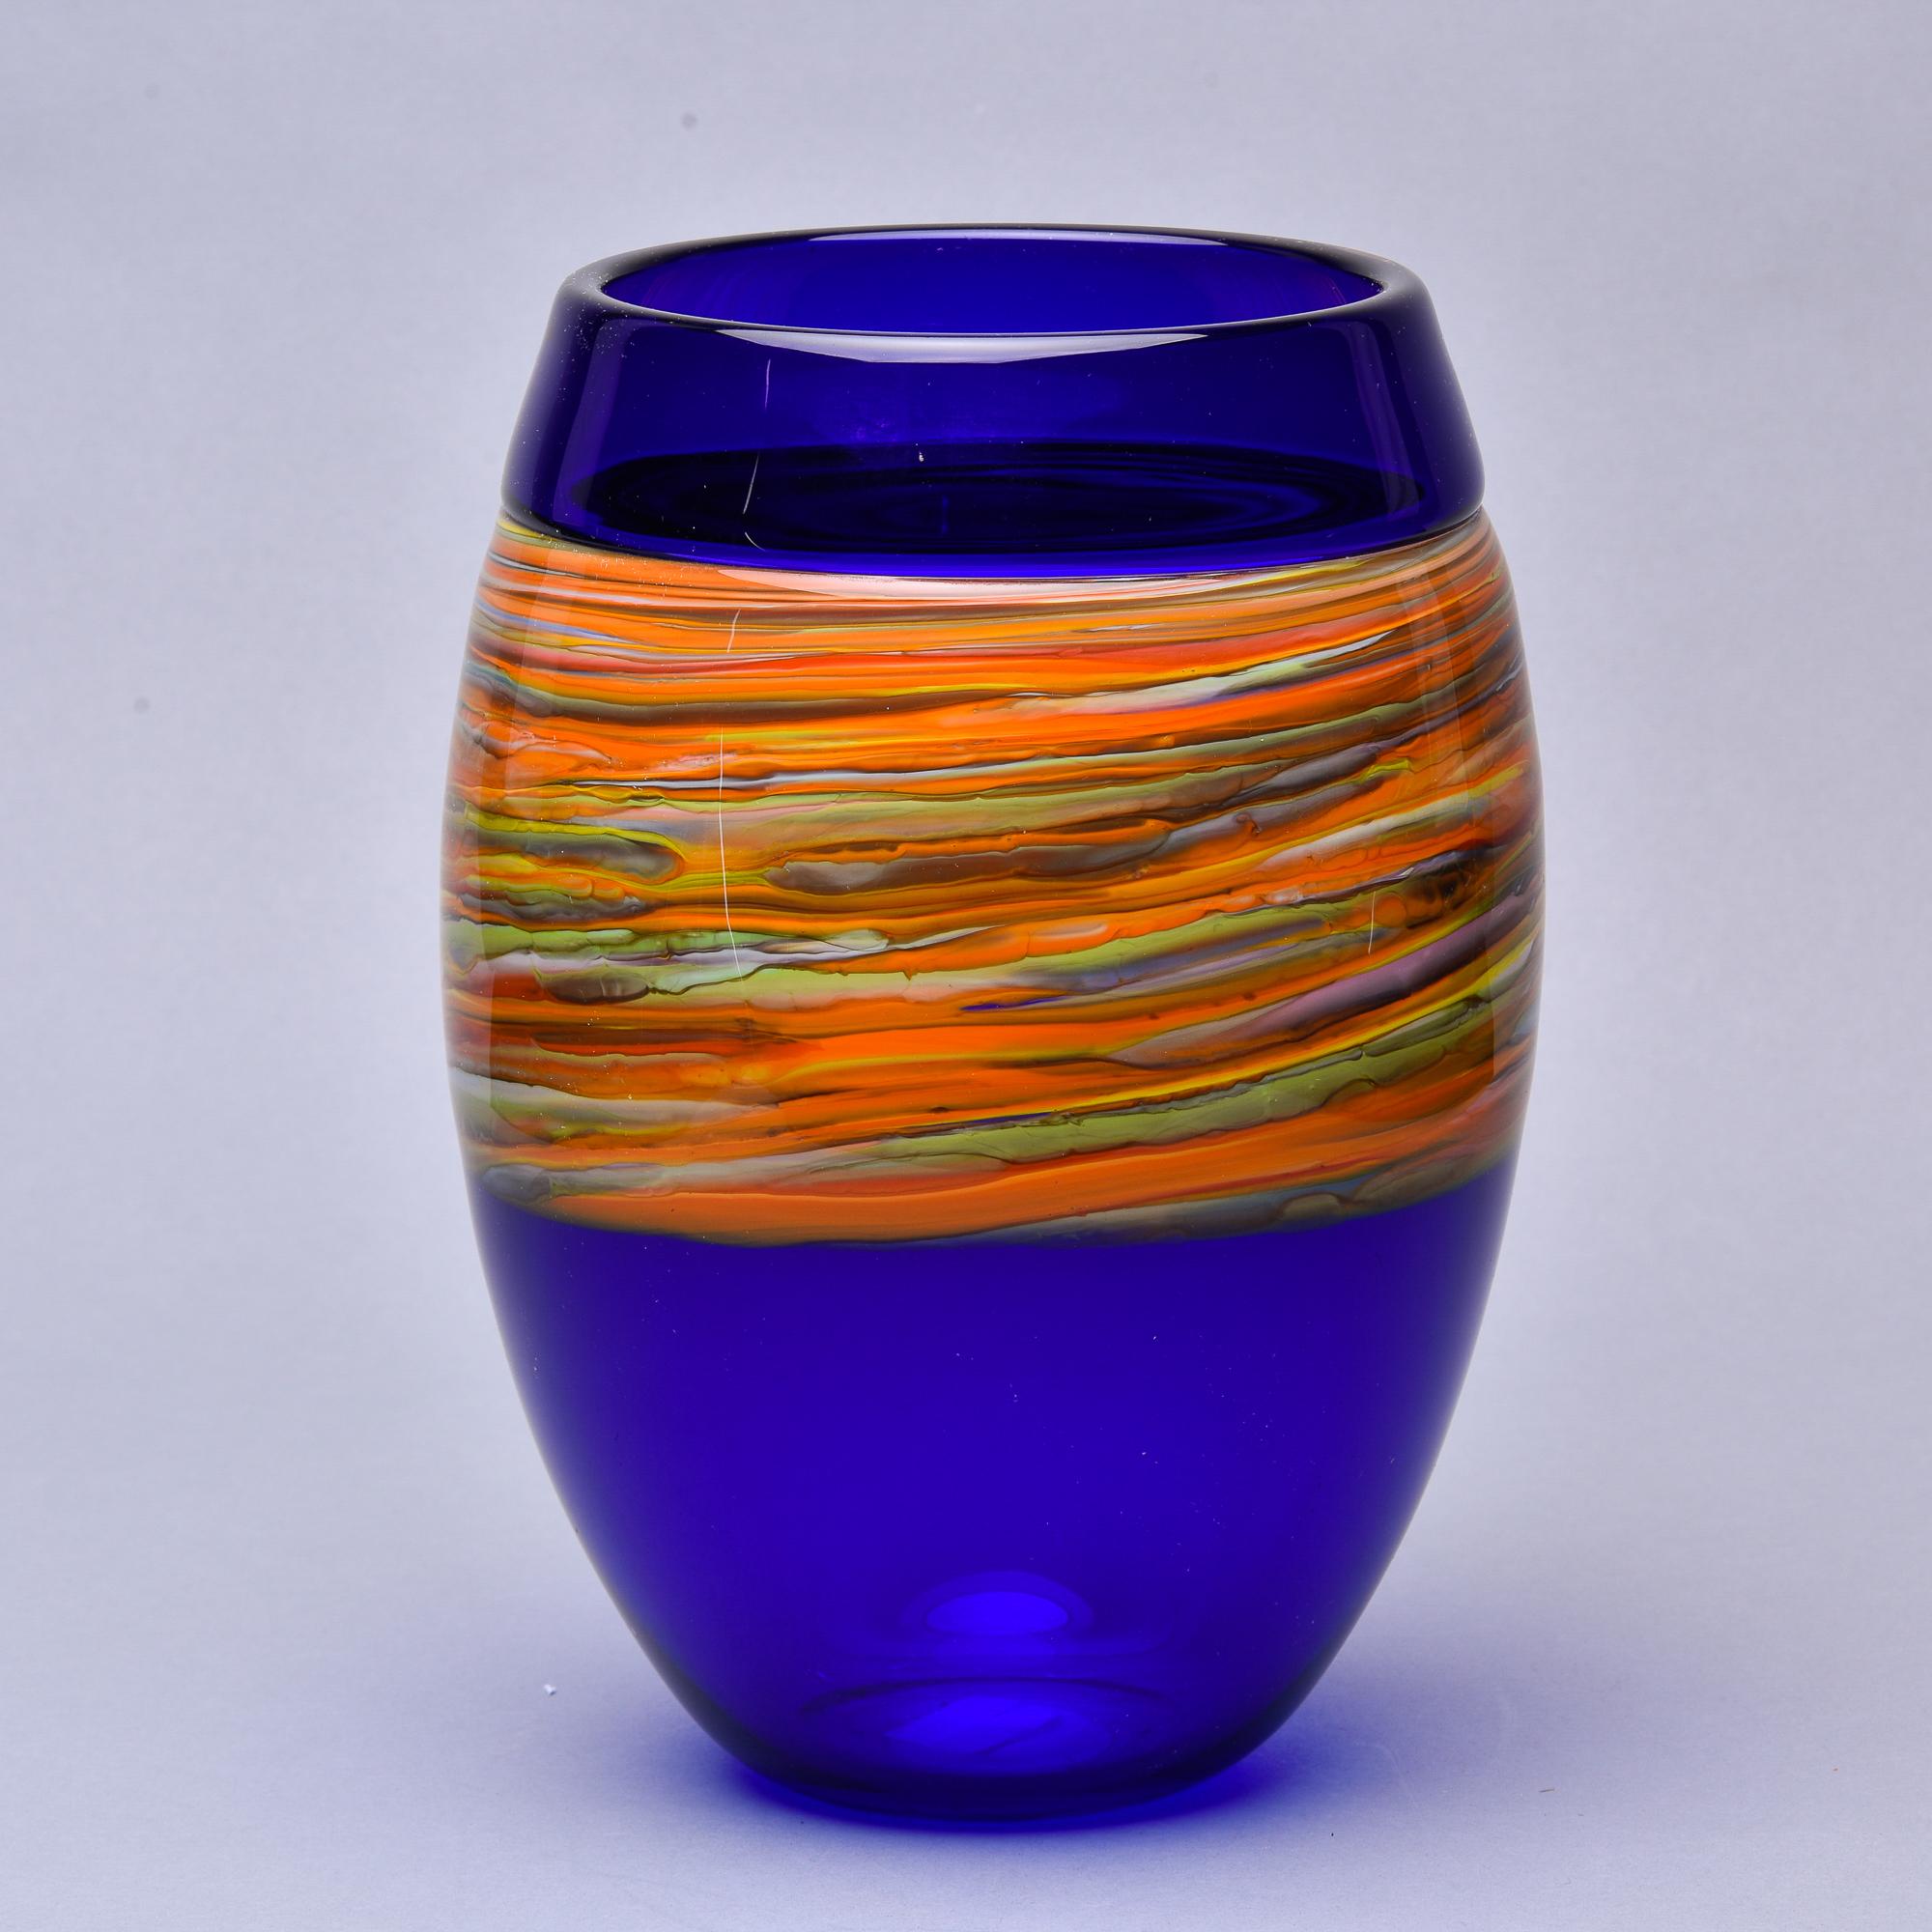 Diese in Italien gefundene Vase aus signiertem Cenedese-Muranoglas aus den 1970er Jahren hat einen satten kobaltblauen Körper mit einem breiten, streifigen Band aus Orange und Gelb mit grünen und weißen Akzenten. Erhebliche Größe - knapp 12